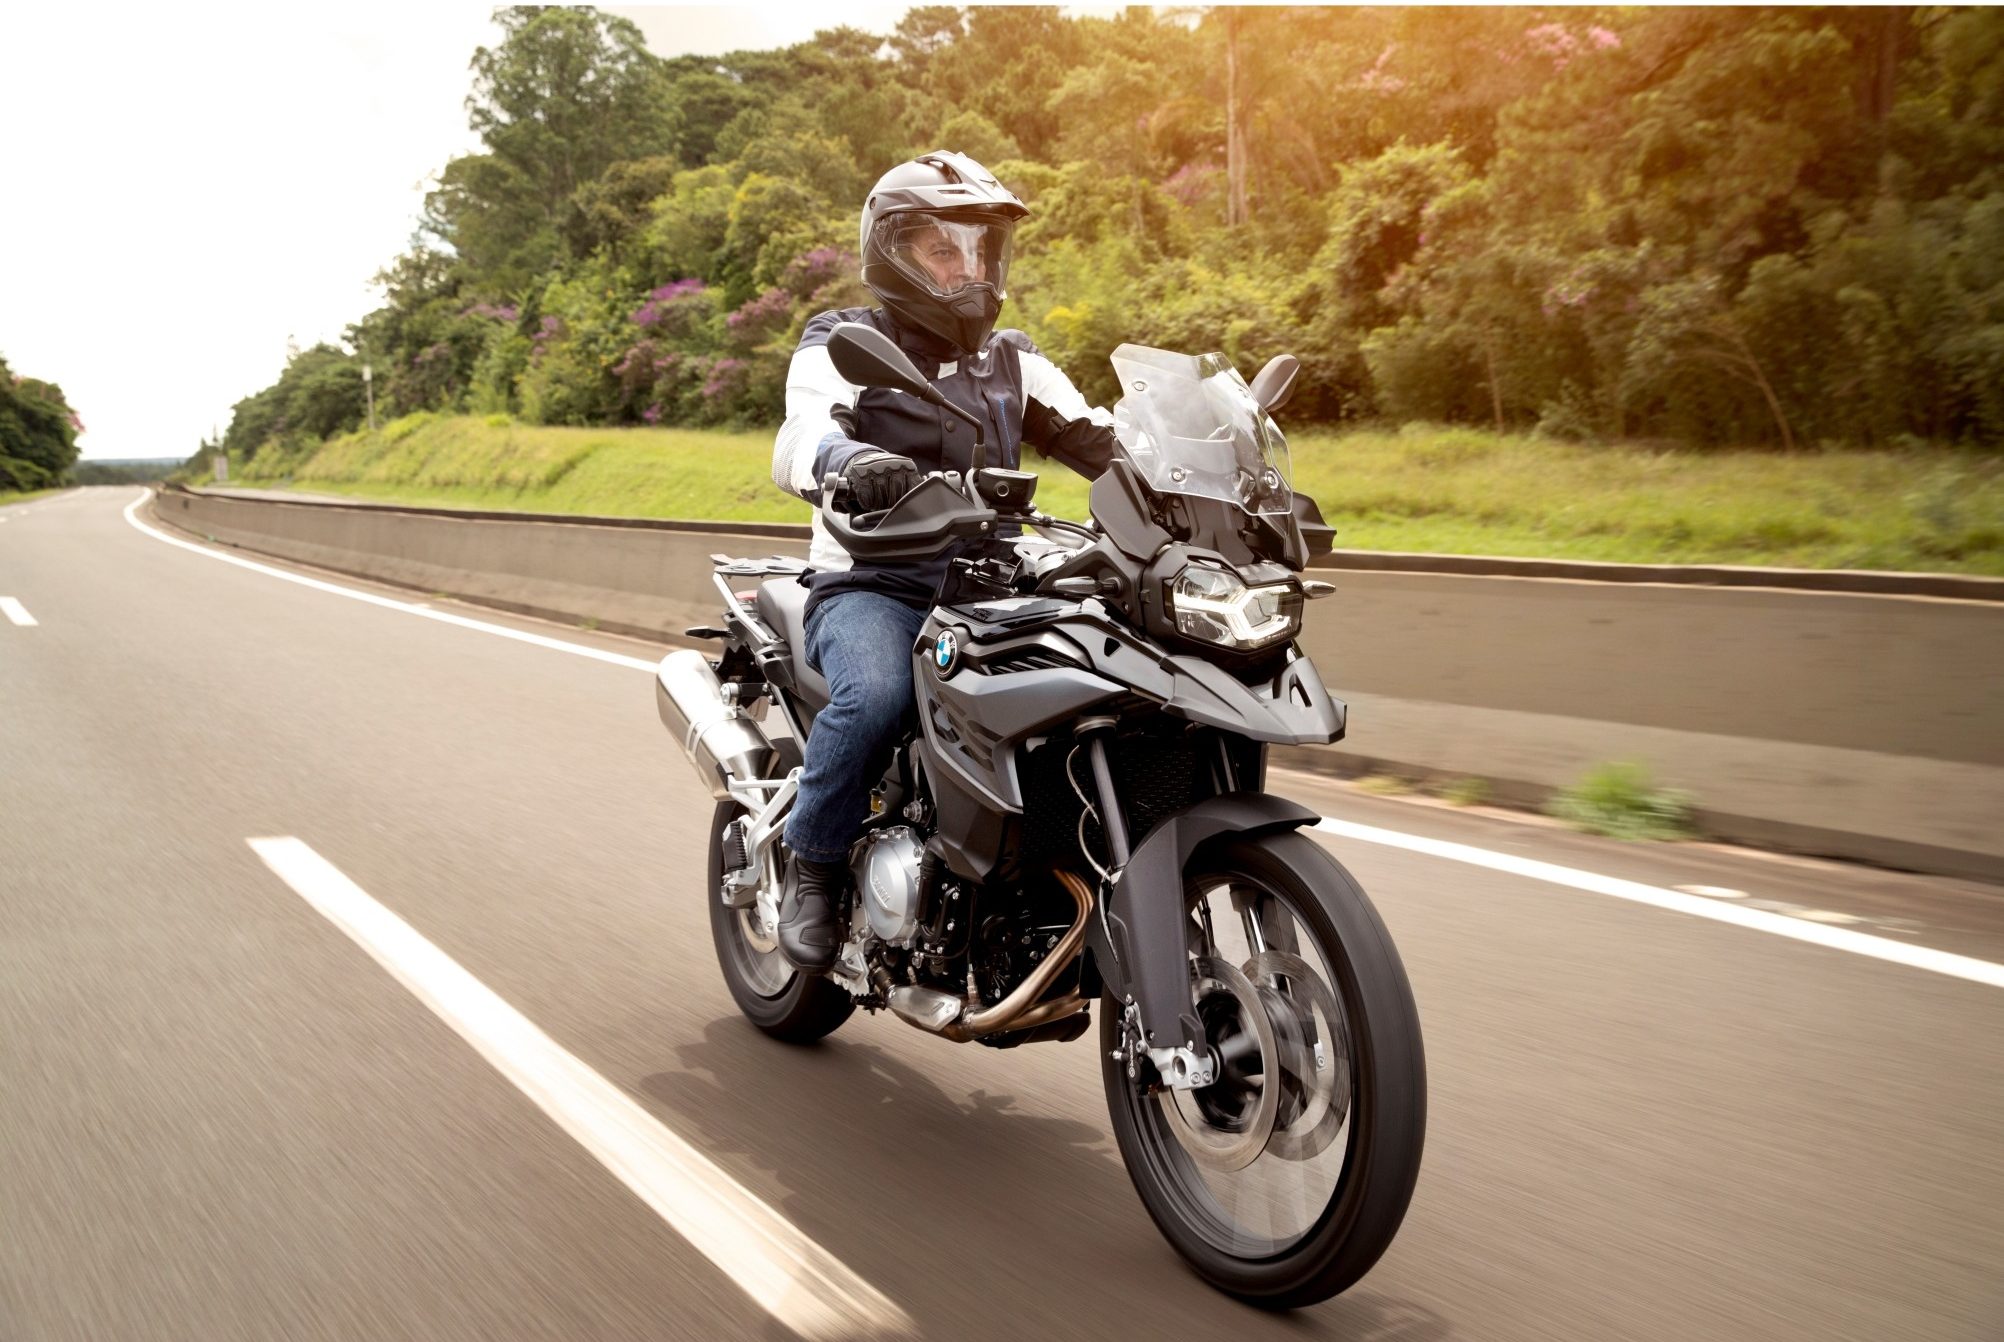 VÍDEO: BMW Motorrad confirma duas novas motos no Brasil em Live do  Motor1.com